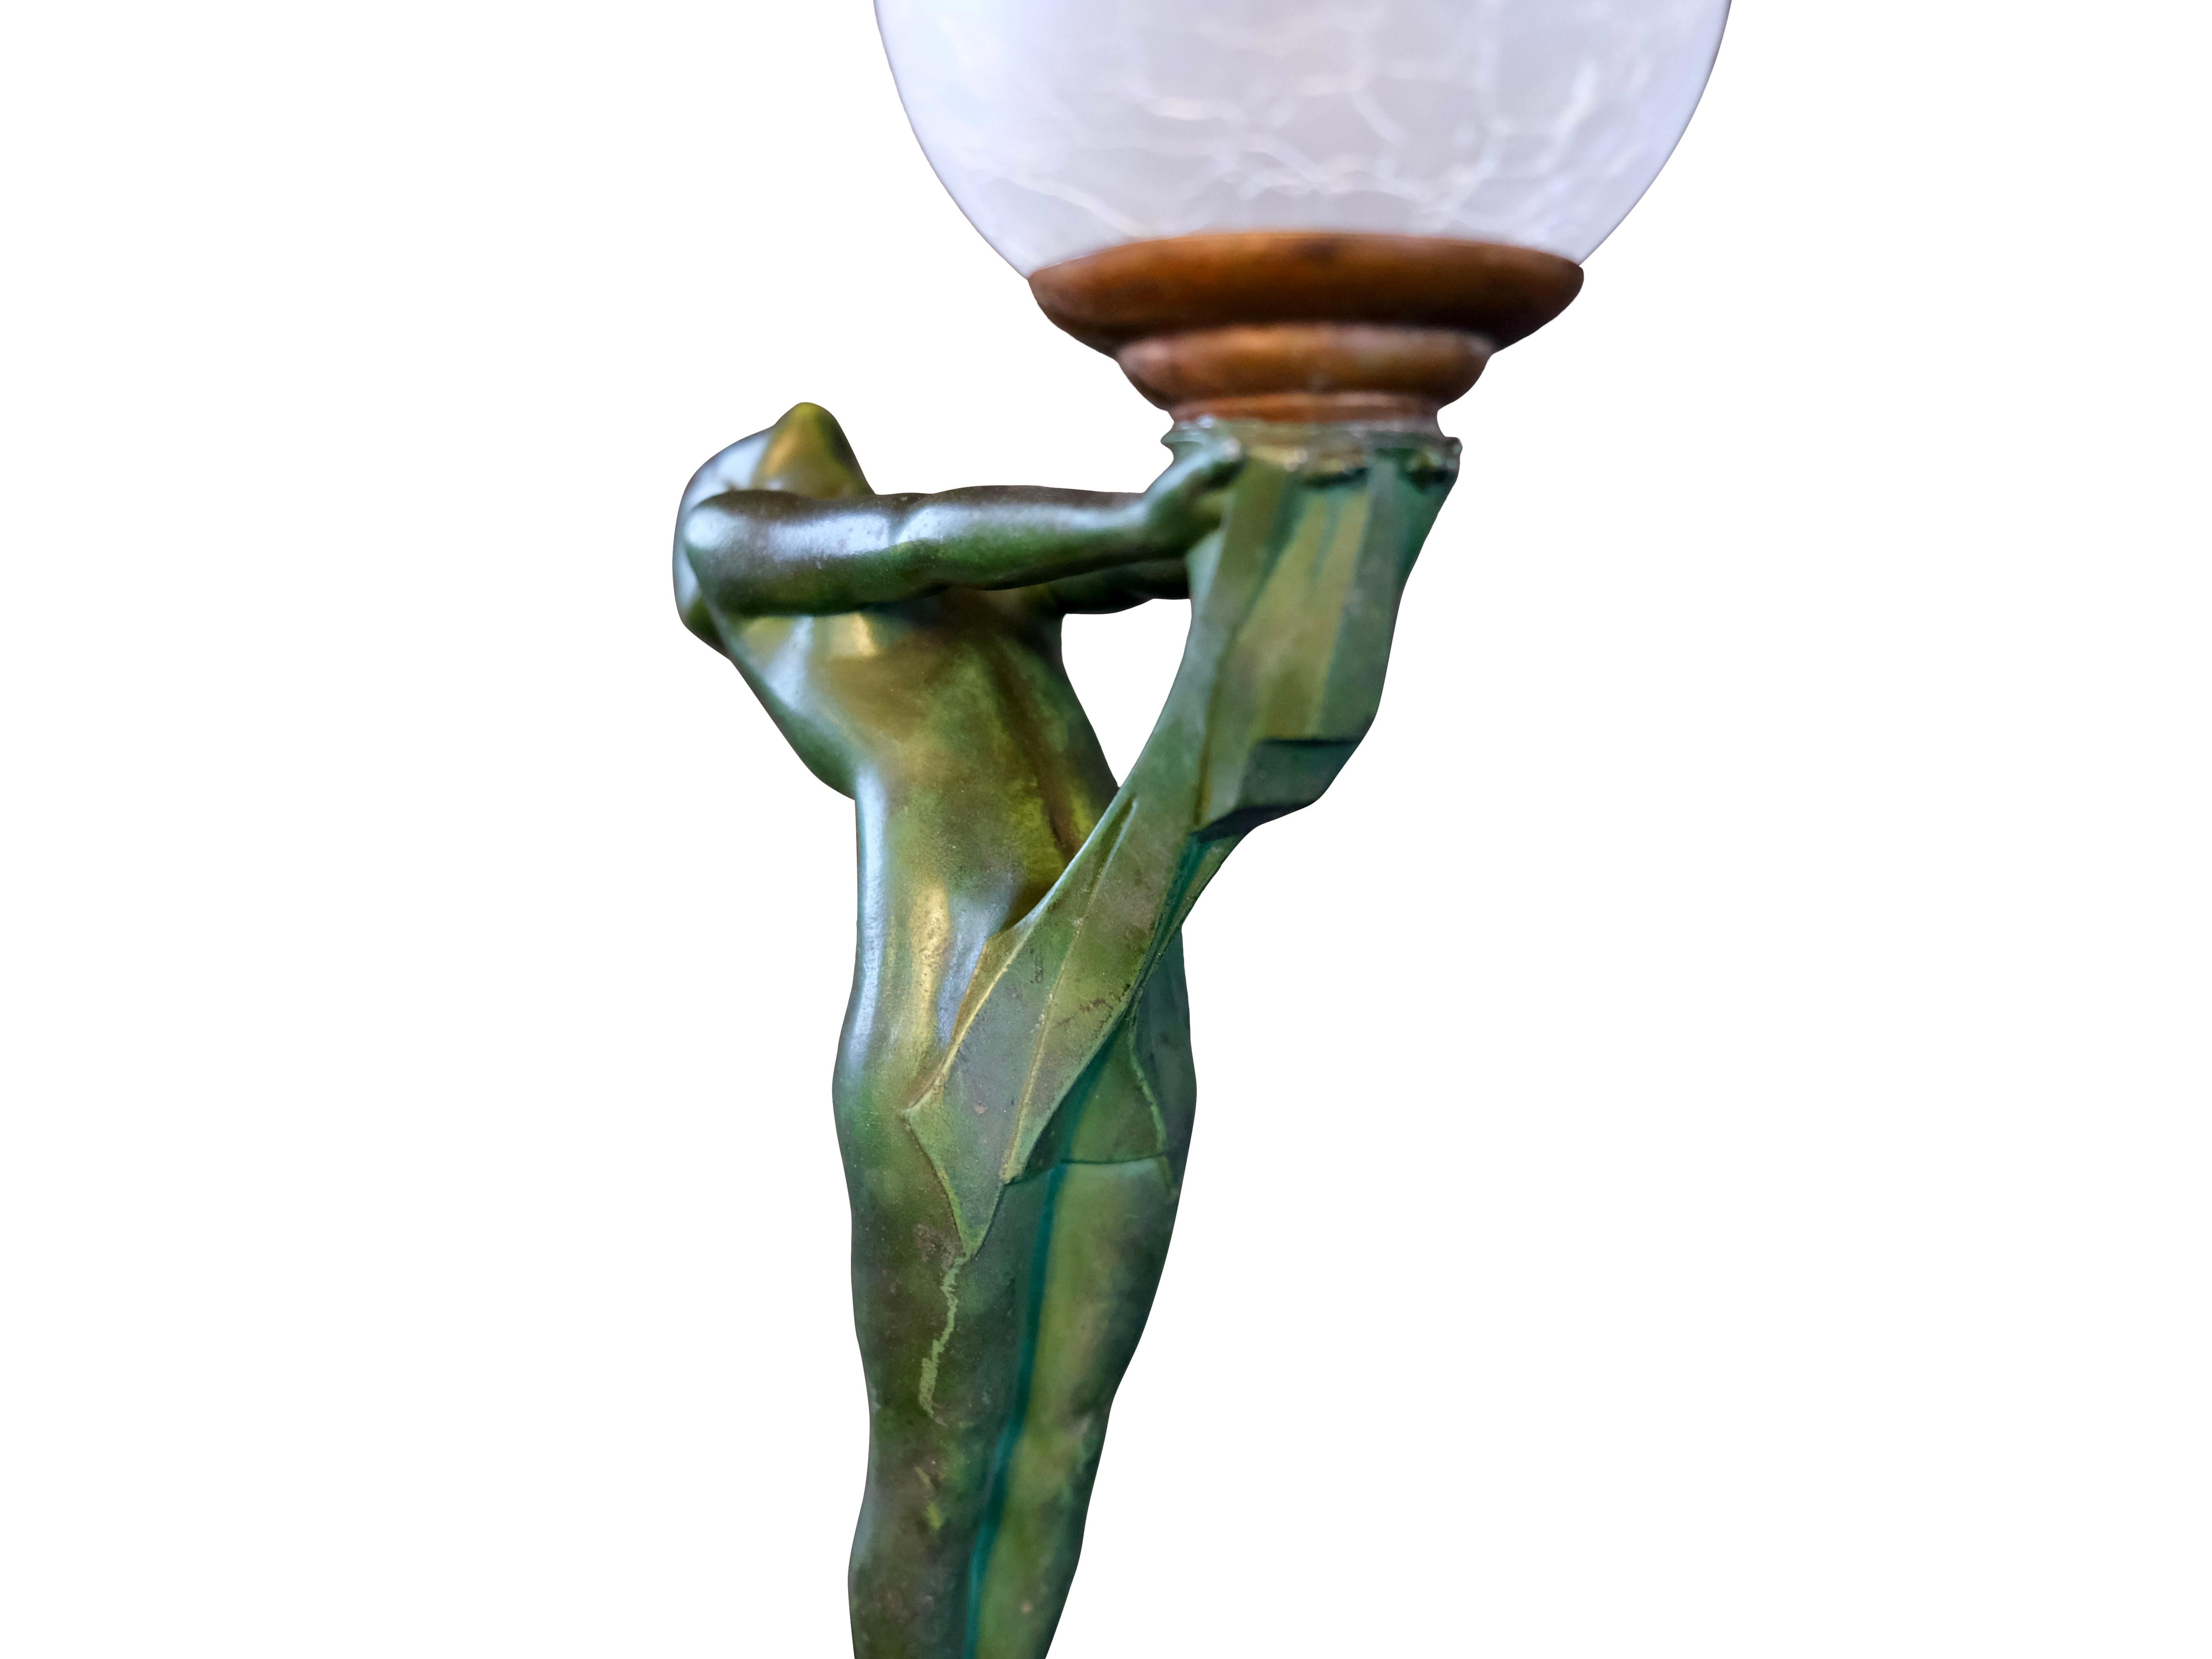 Important Art Deco Clarté Sculpture Lueur Lamp from the Art Deco Max Le Verrier 1